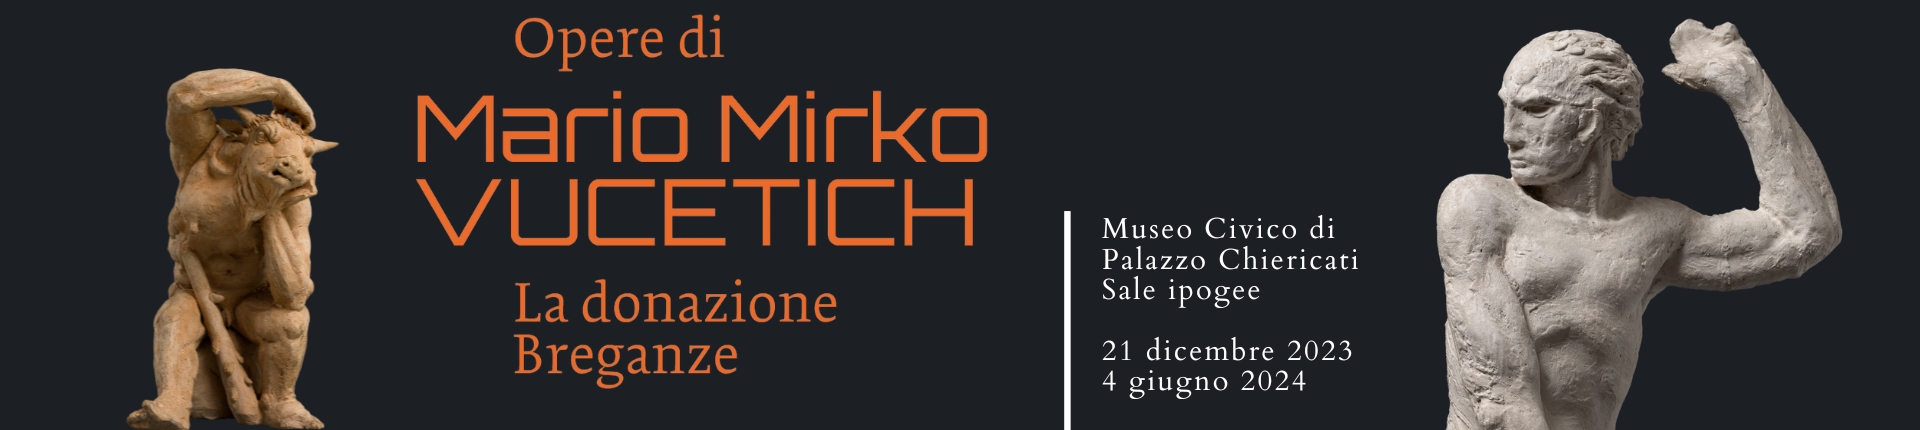 Mostra "Opere di Mario Mirko Vucetich. La donazione Breganze"